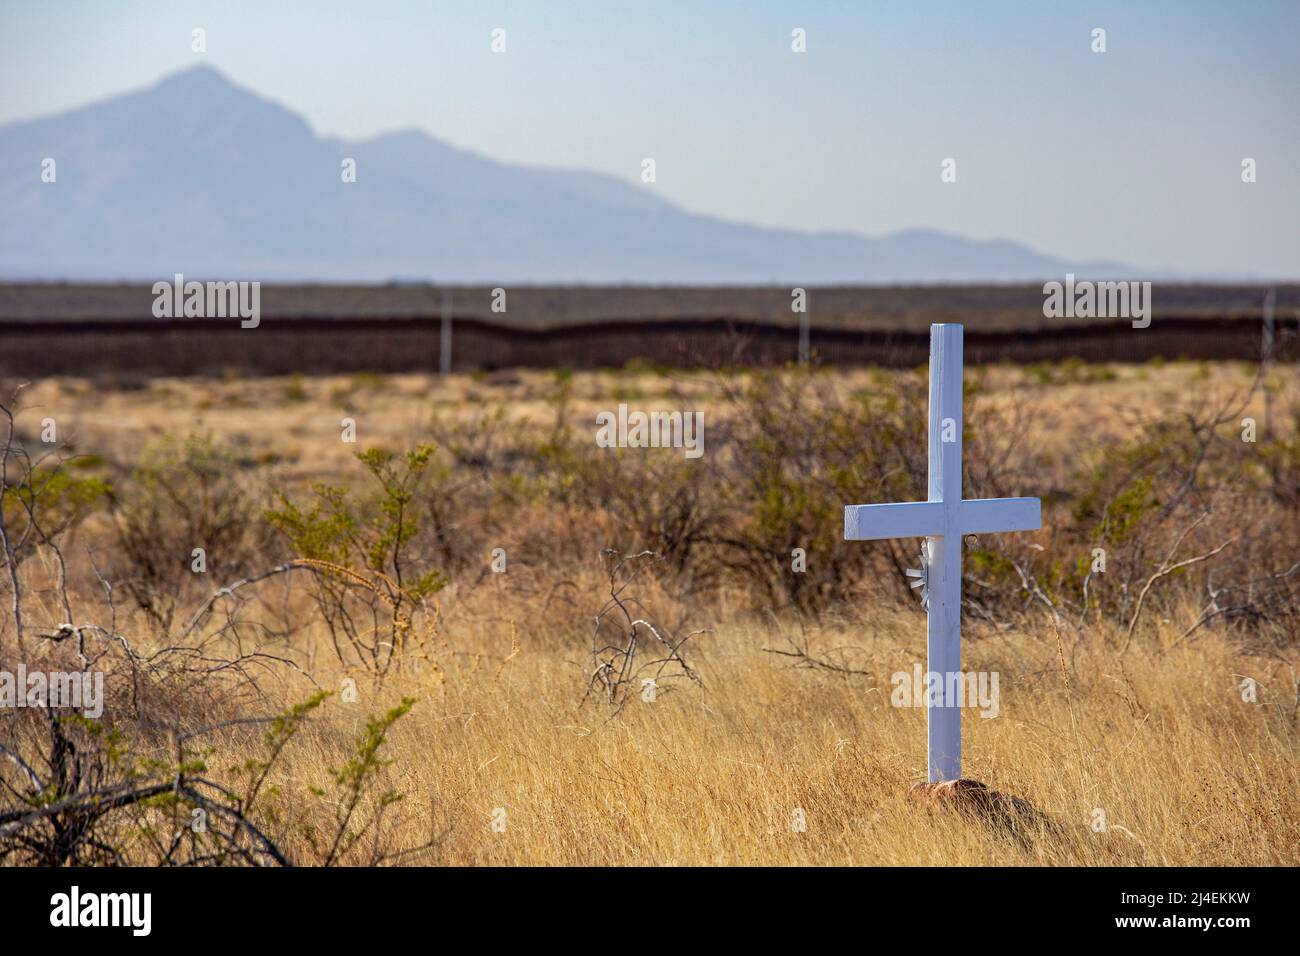 Douglas, Arizona - Une croix blanche se dresse juste au nord de la barrière frontalière entre les États-Unis et le Mexique. Les restes de près de 4 000 migrants ont été trouvés dans la sout Banque D'Images